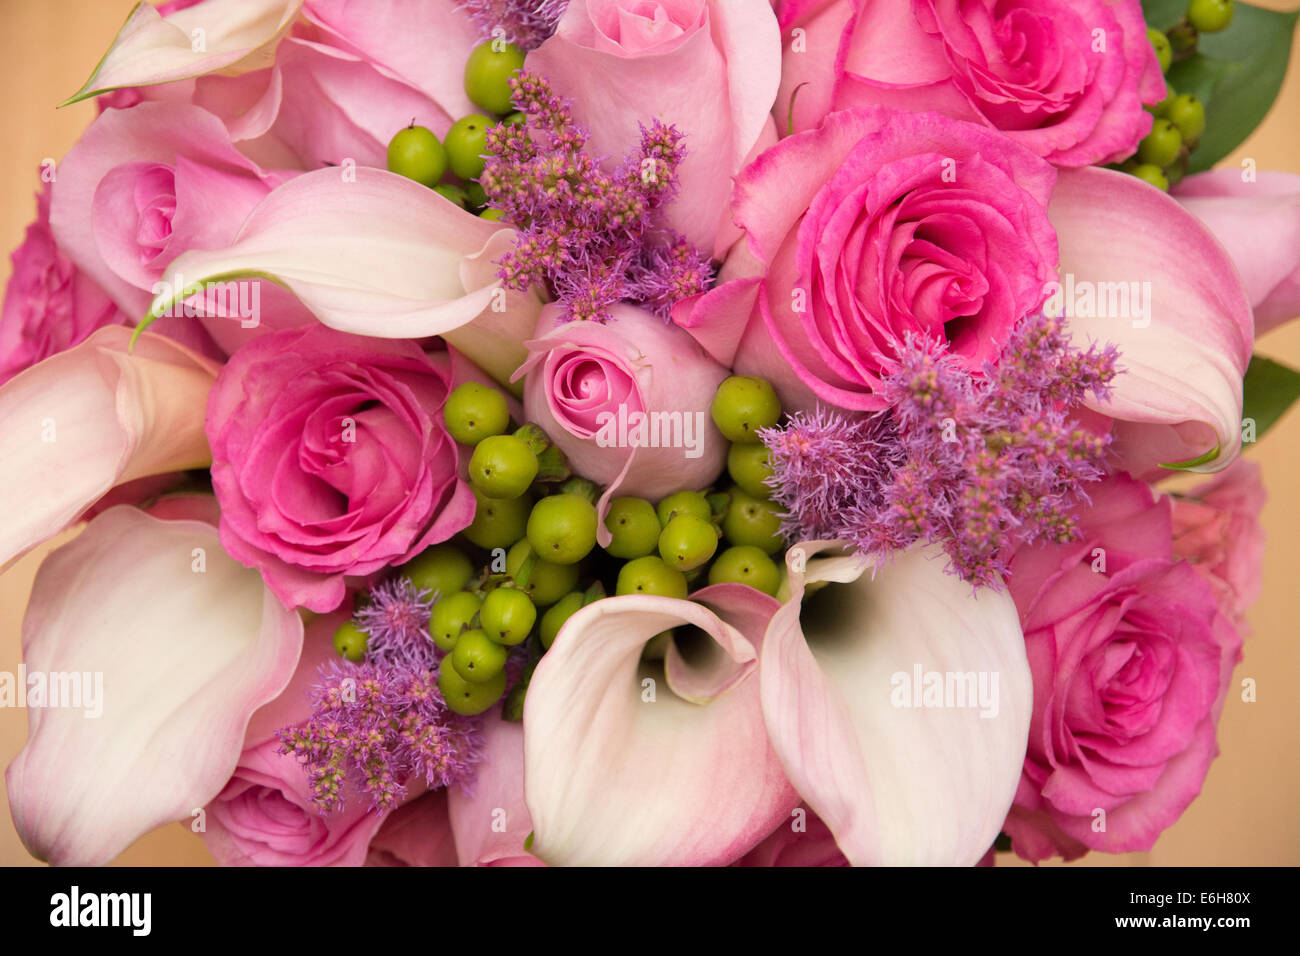 Ein Strauß Blumen in schönen rosa Farben - Rosen und Calla Lilien. Stockfoto